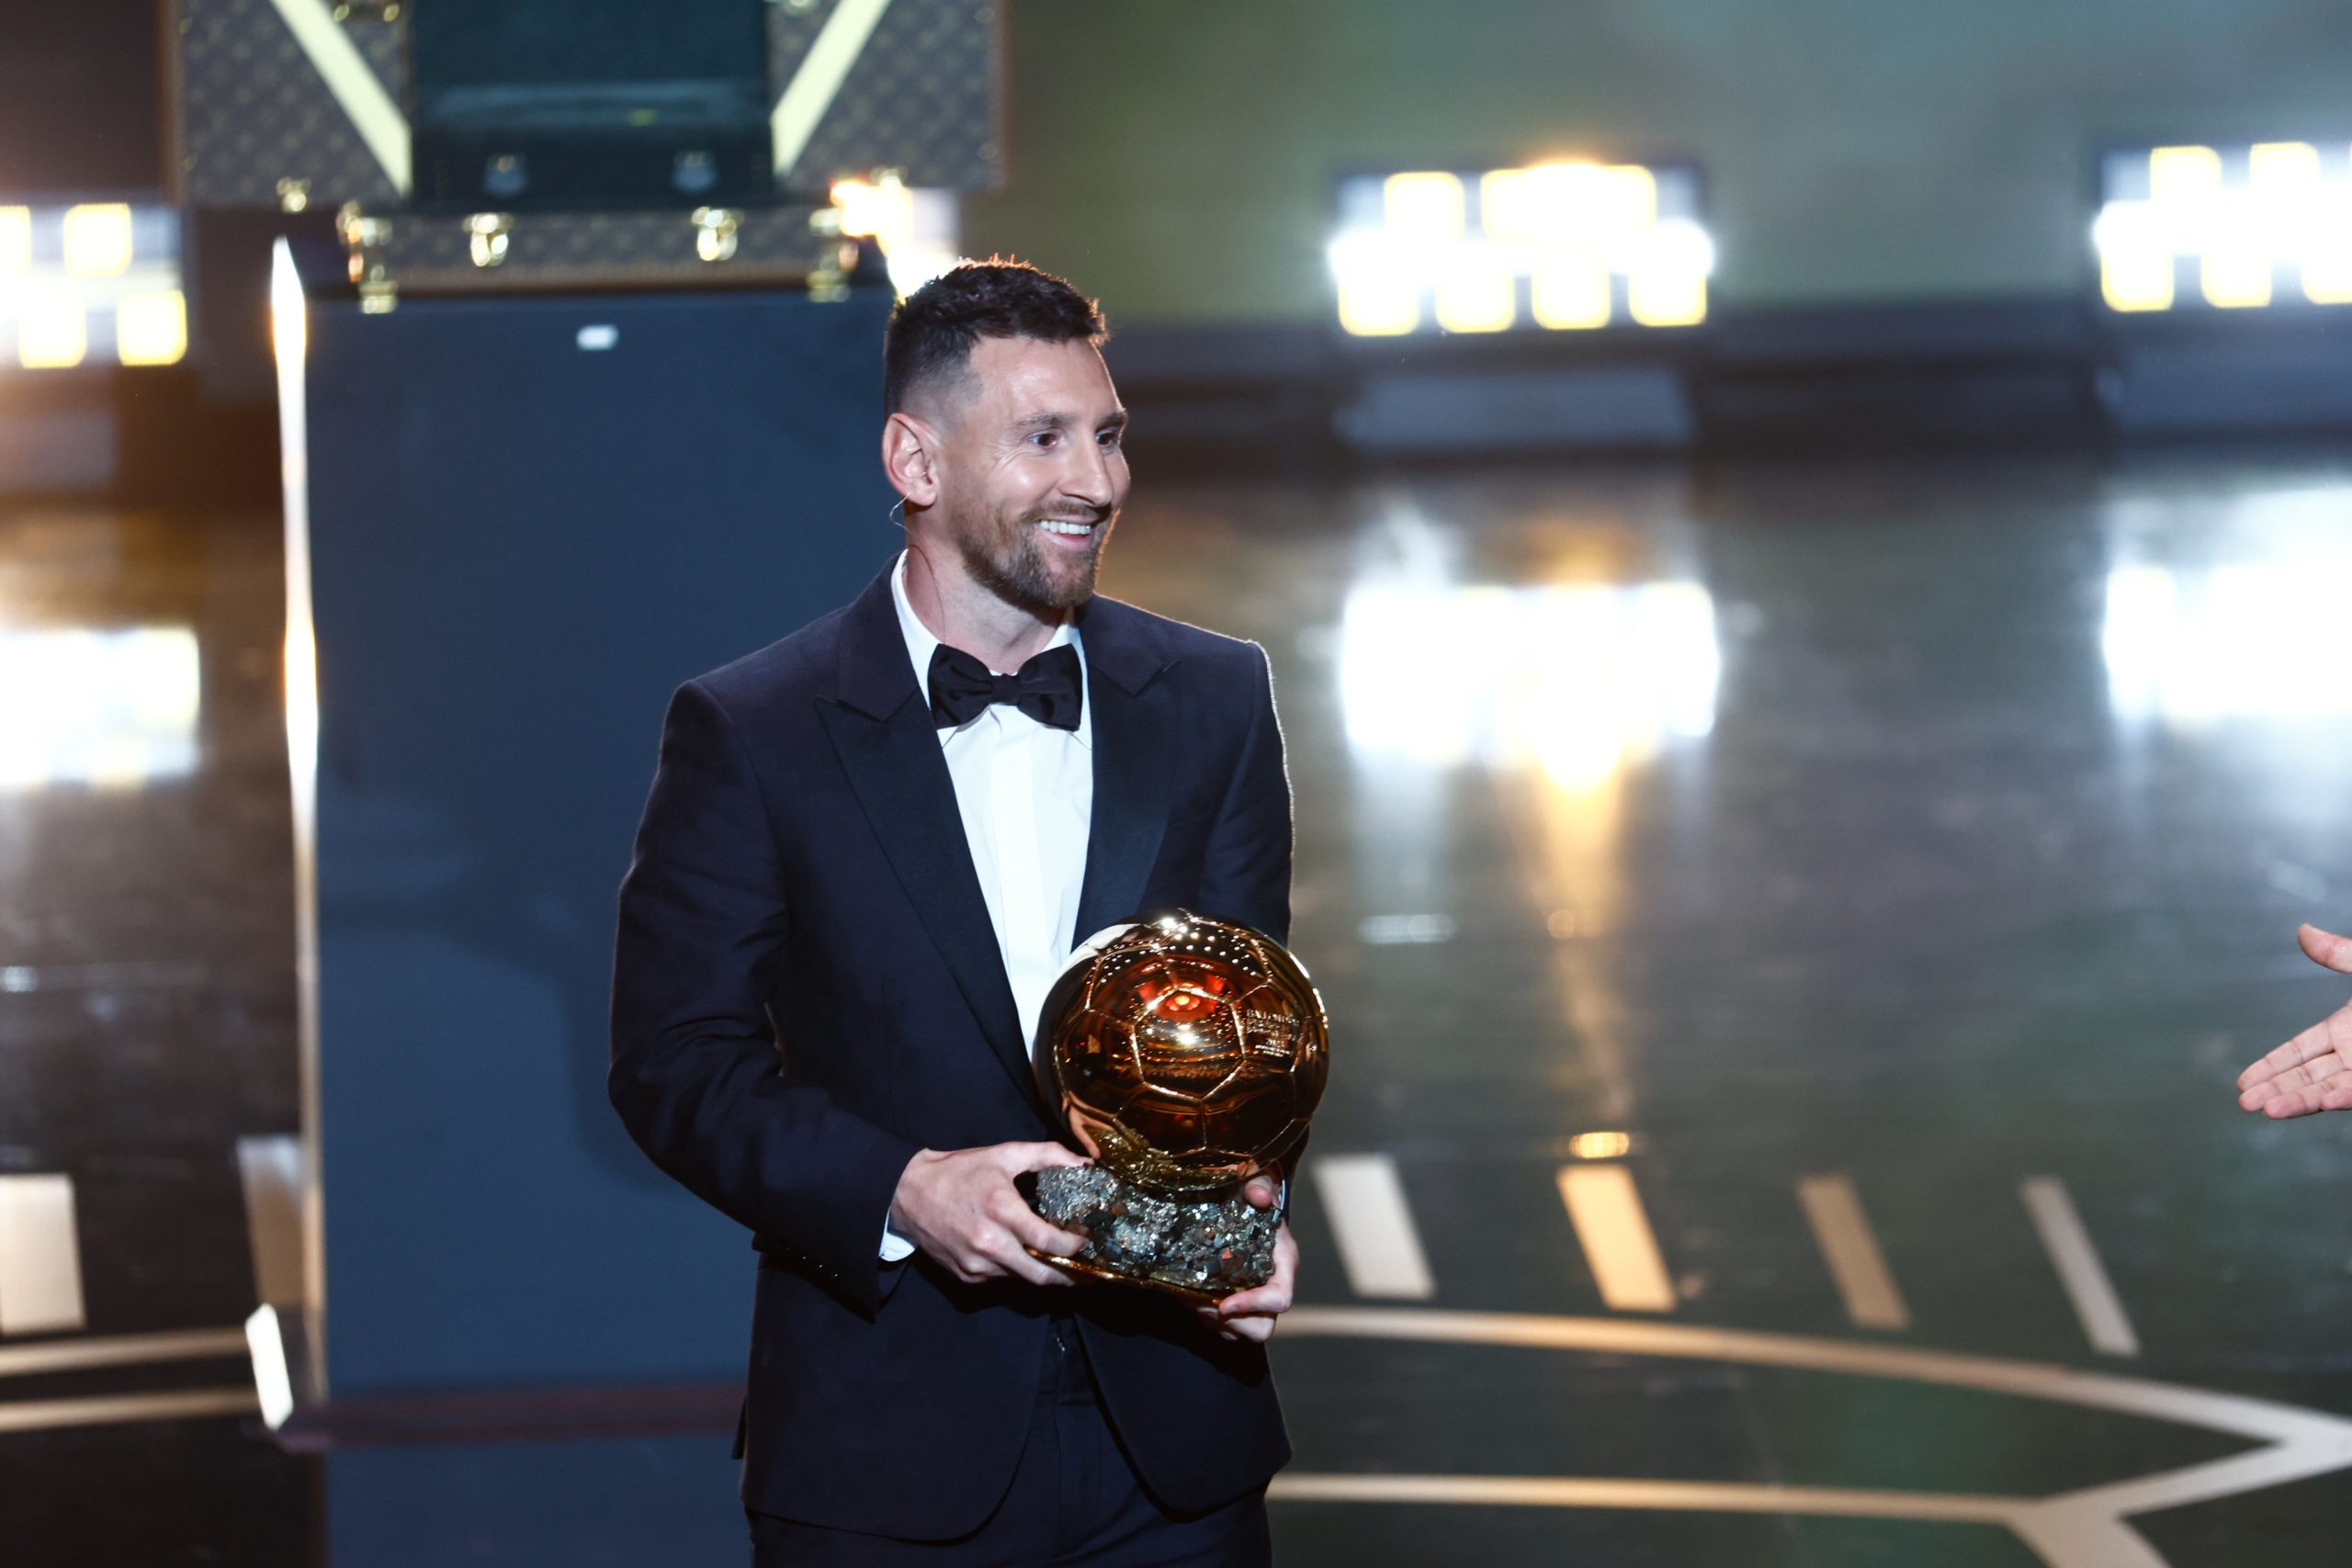 Messi é eleito o melhor jogador de todos os tempos por revista